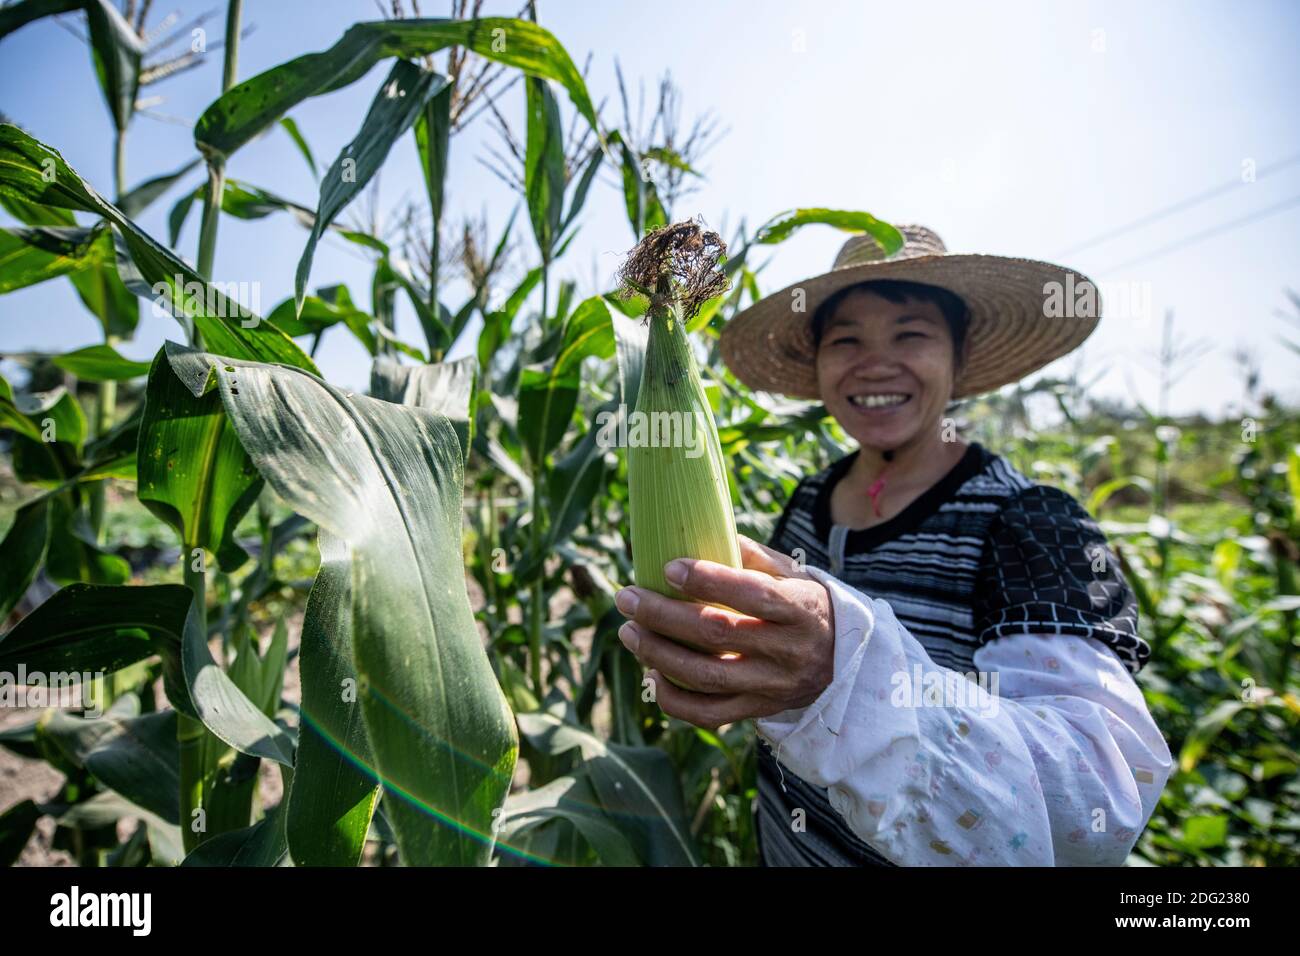 Agricoltura su piccola scala nella Cina rurale - agricoltura biologica e di sussistenza. Una femmina coltivatrice bagnano i suoi prodotti e offre al fotografo del mais. Foto Stock